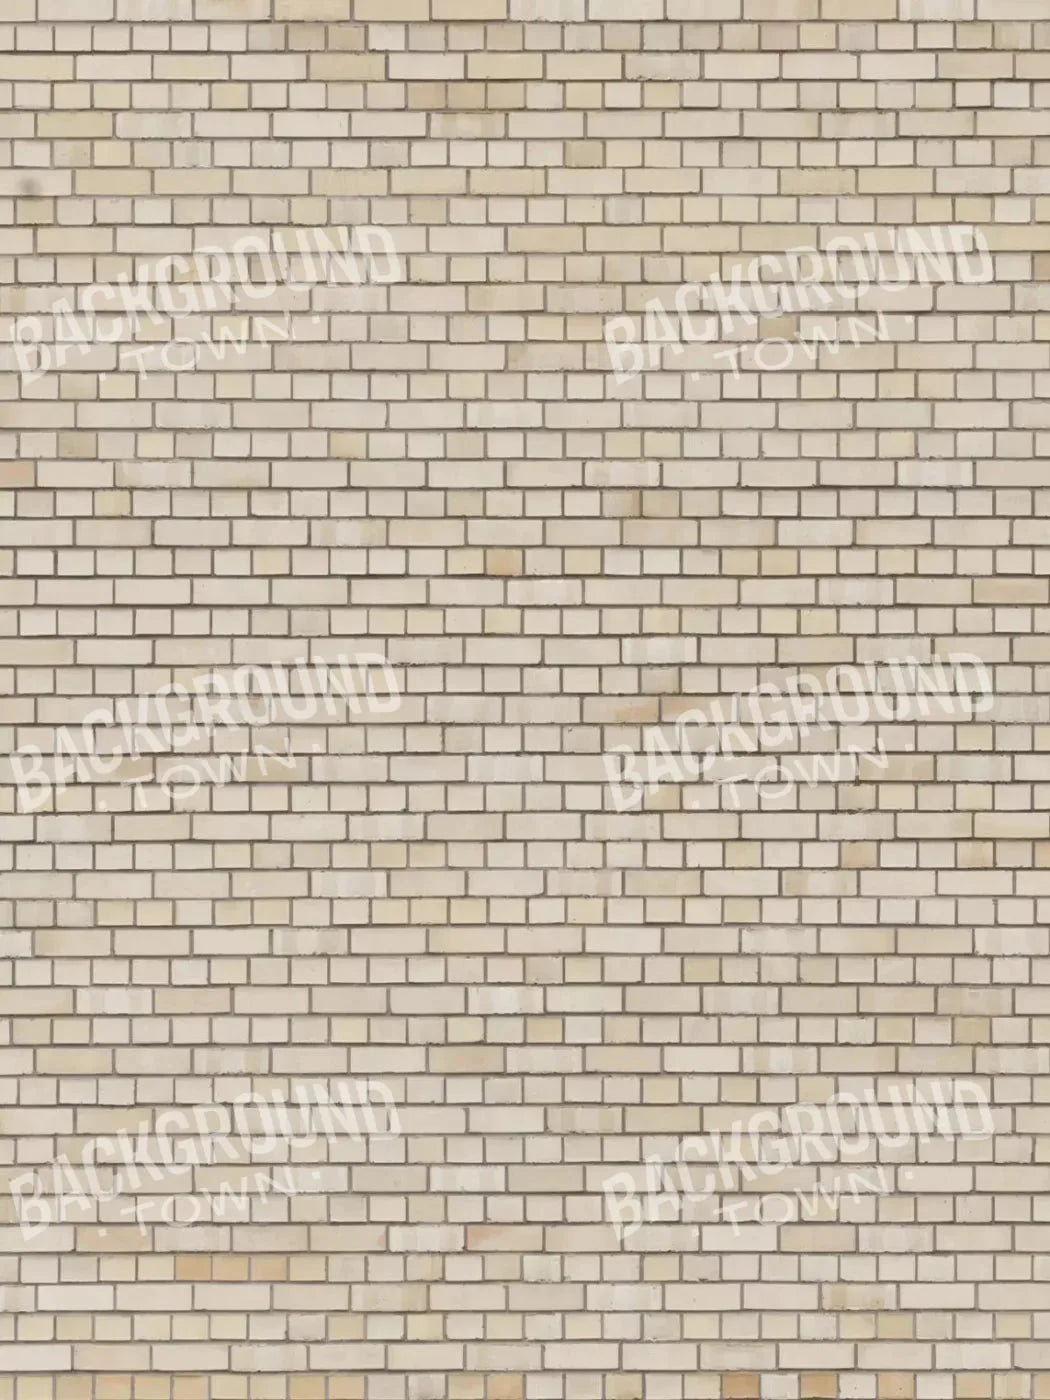 Brickwork Rubbermat Floor 8X10 ( 96 X 120 Inch )